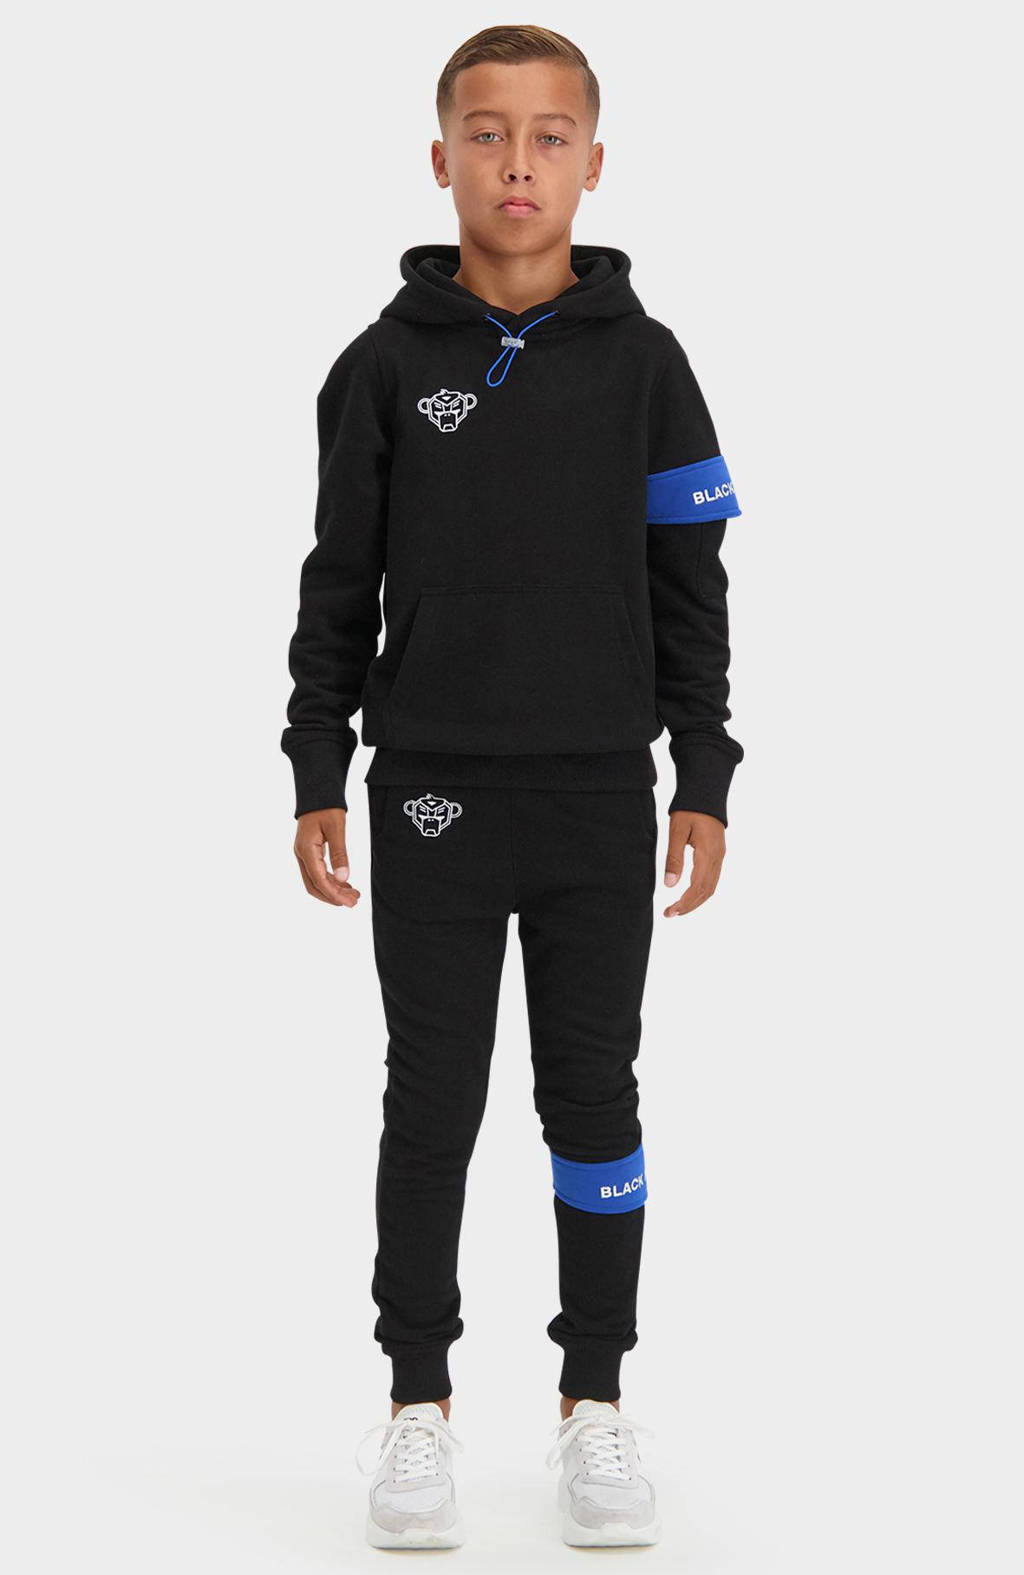 Zwart en blauwe jongens en meisjes BLACK BANANAS unisex hoodie van sweat materiaal met logo dessin, lange mouwen en capuchon